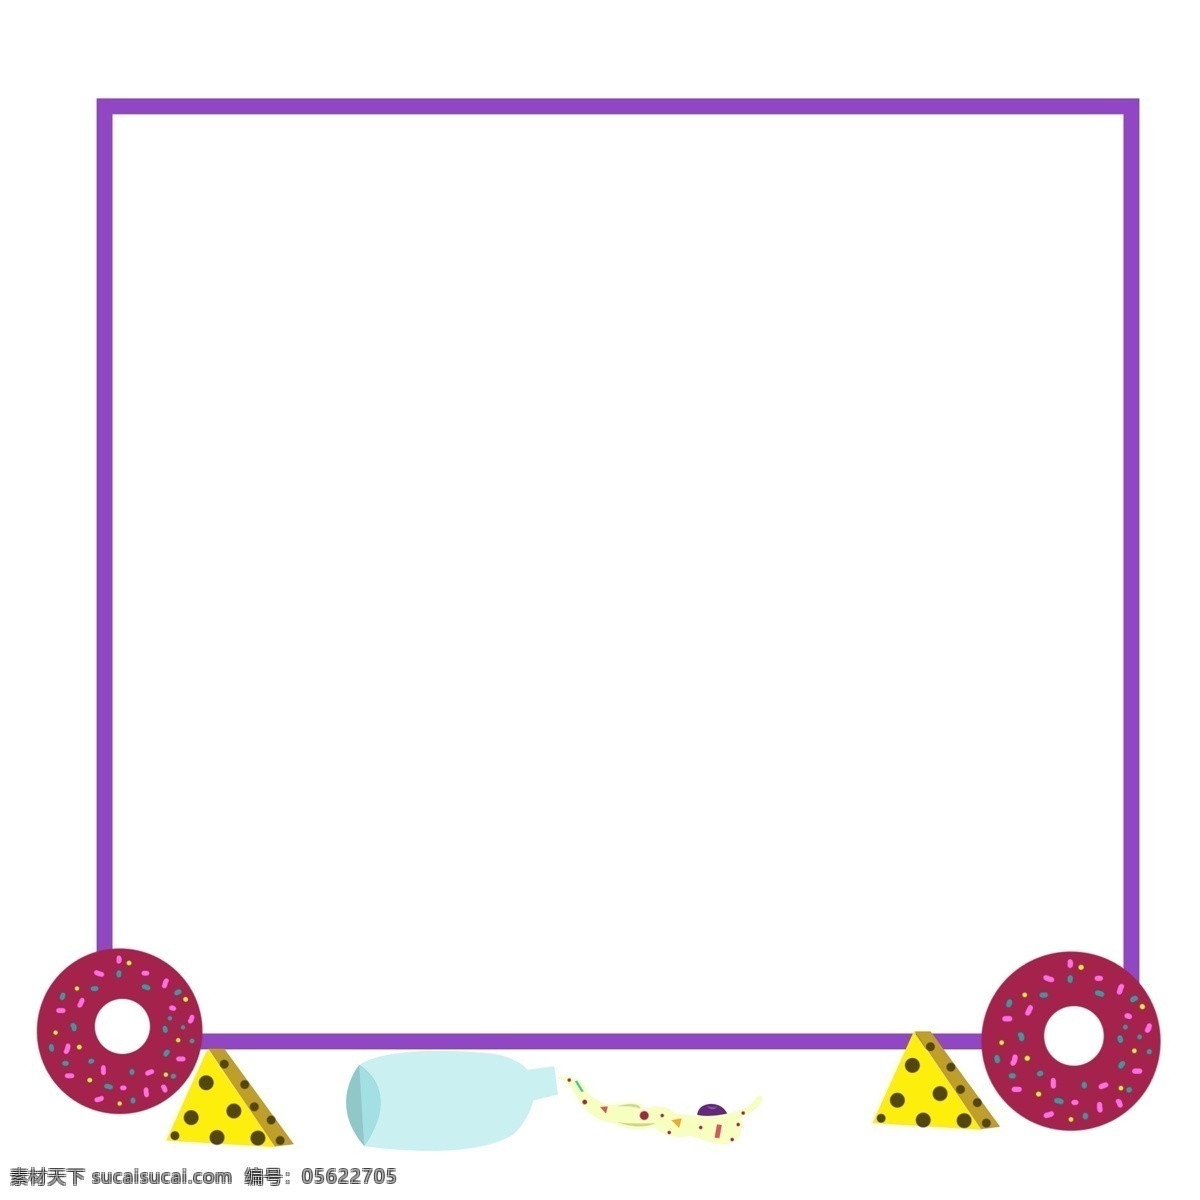 方形 甜甜 圈 边框 插画 美食 紫色方形边框 甜品甜点边框 卡通装饰边框 边框插画 甜甜圈边框